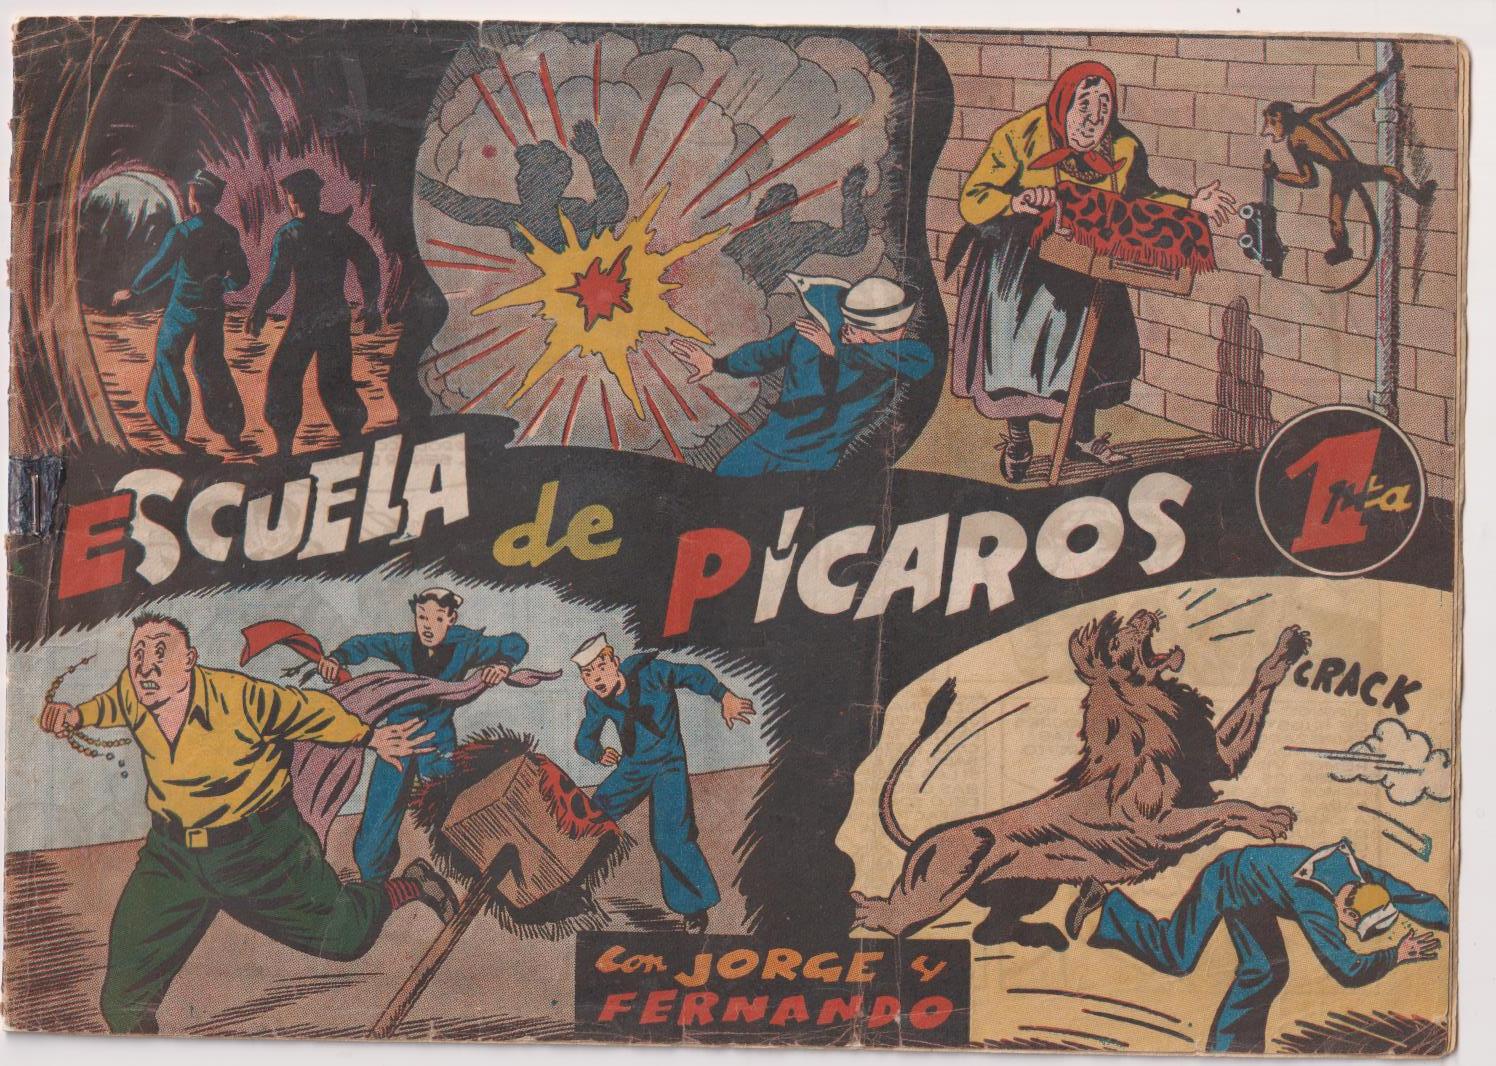 Jorge y Fernando nº 84. Escuela de pícaros. Hispano Americana 1940